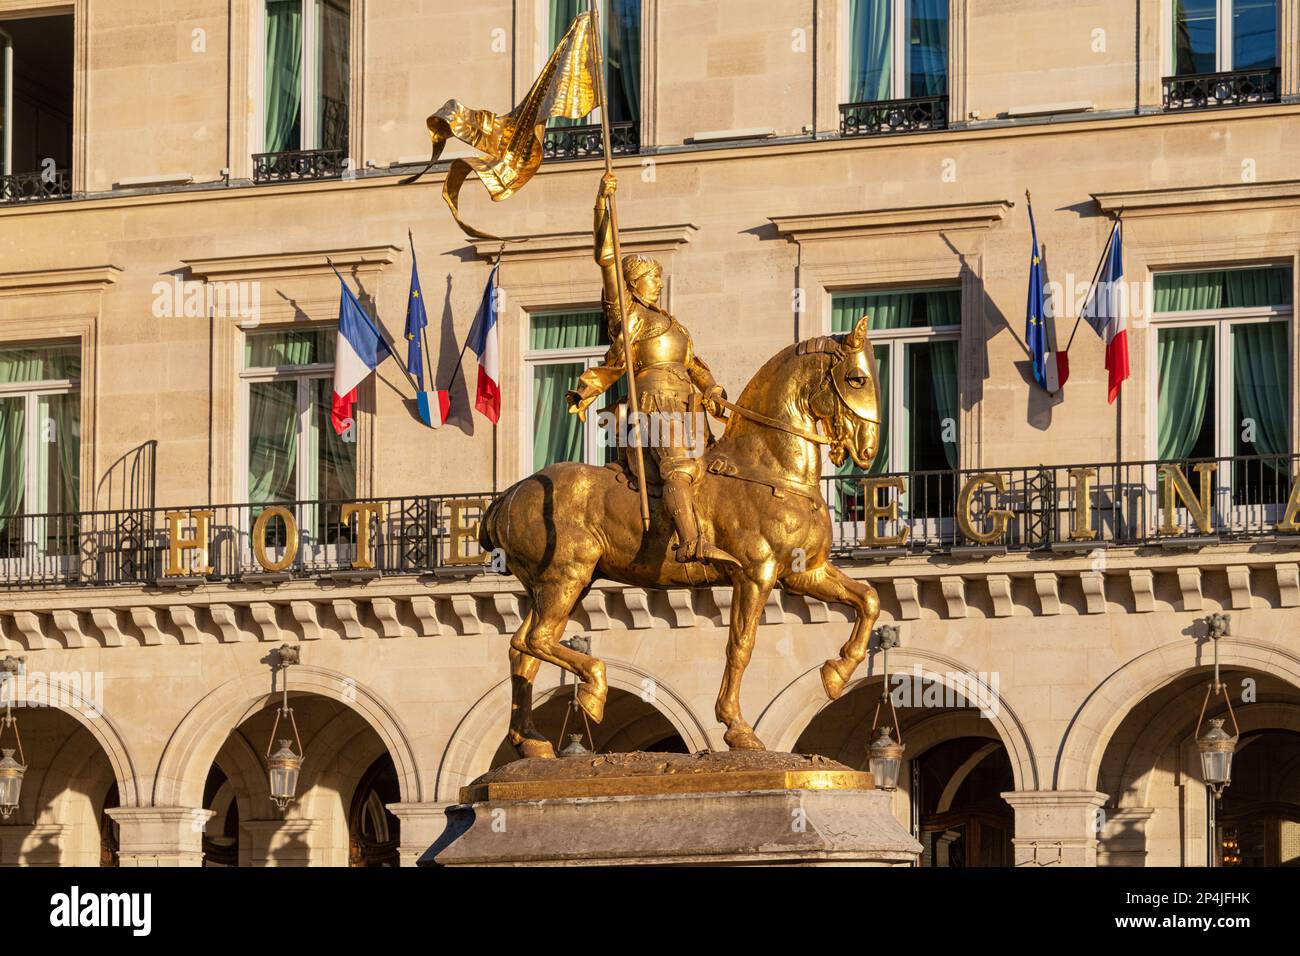 La statua equestre dorata di bronzo di Giovanna d'Arco nella Place des Pyramides, Parigi, Francia. Foto Stock